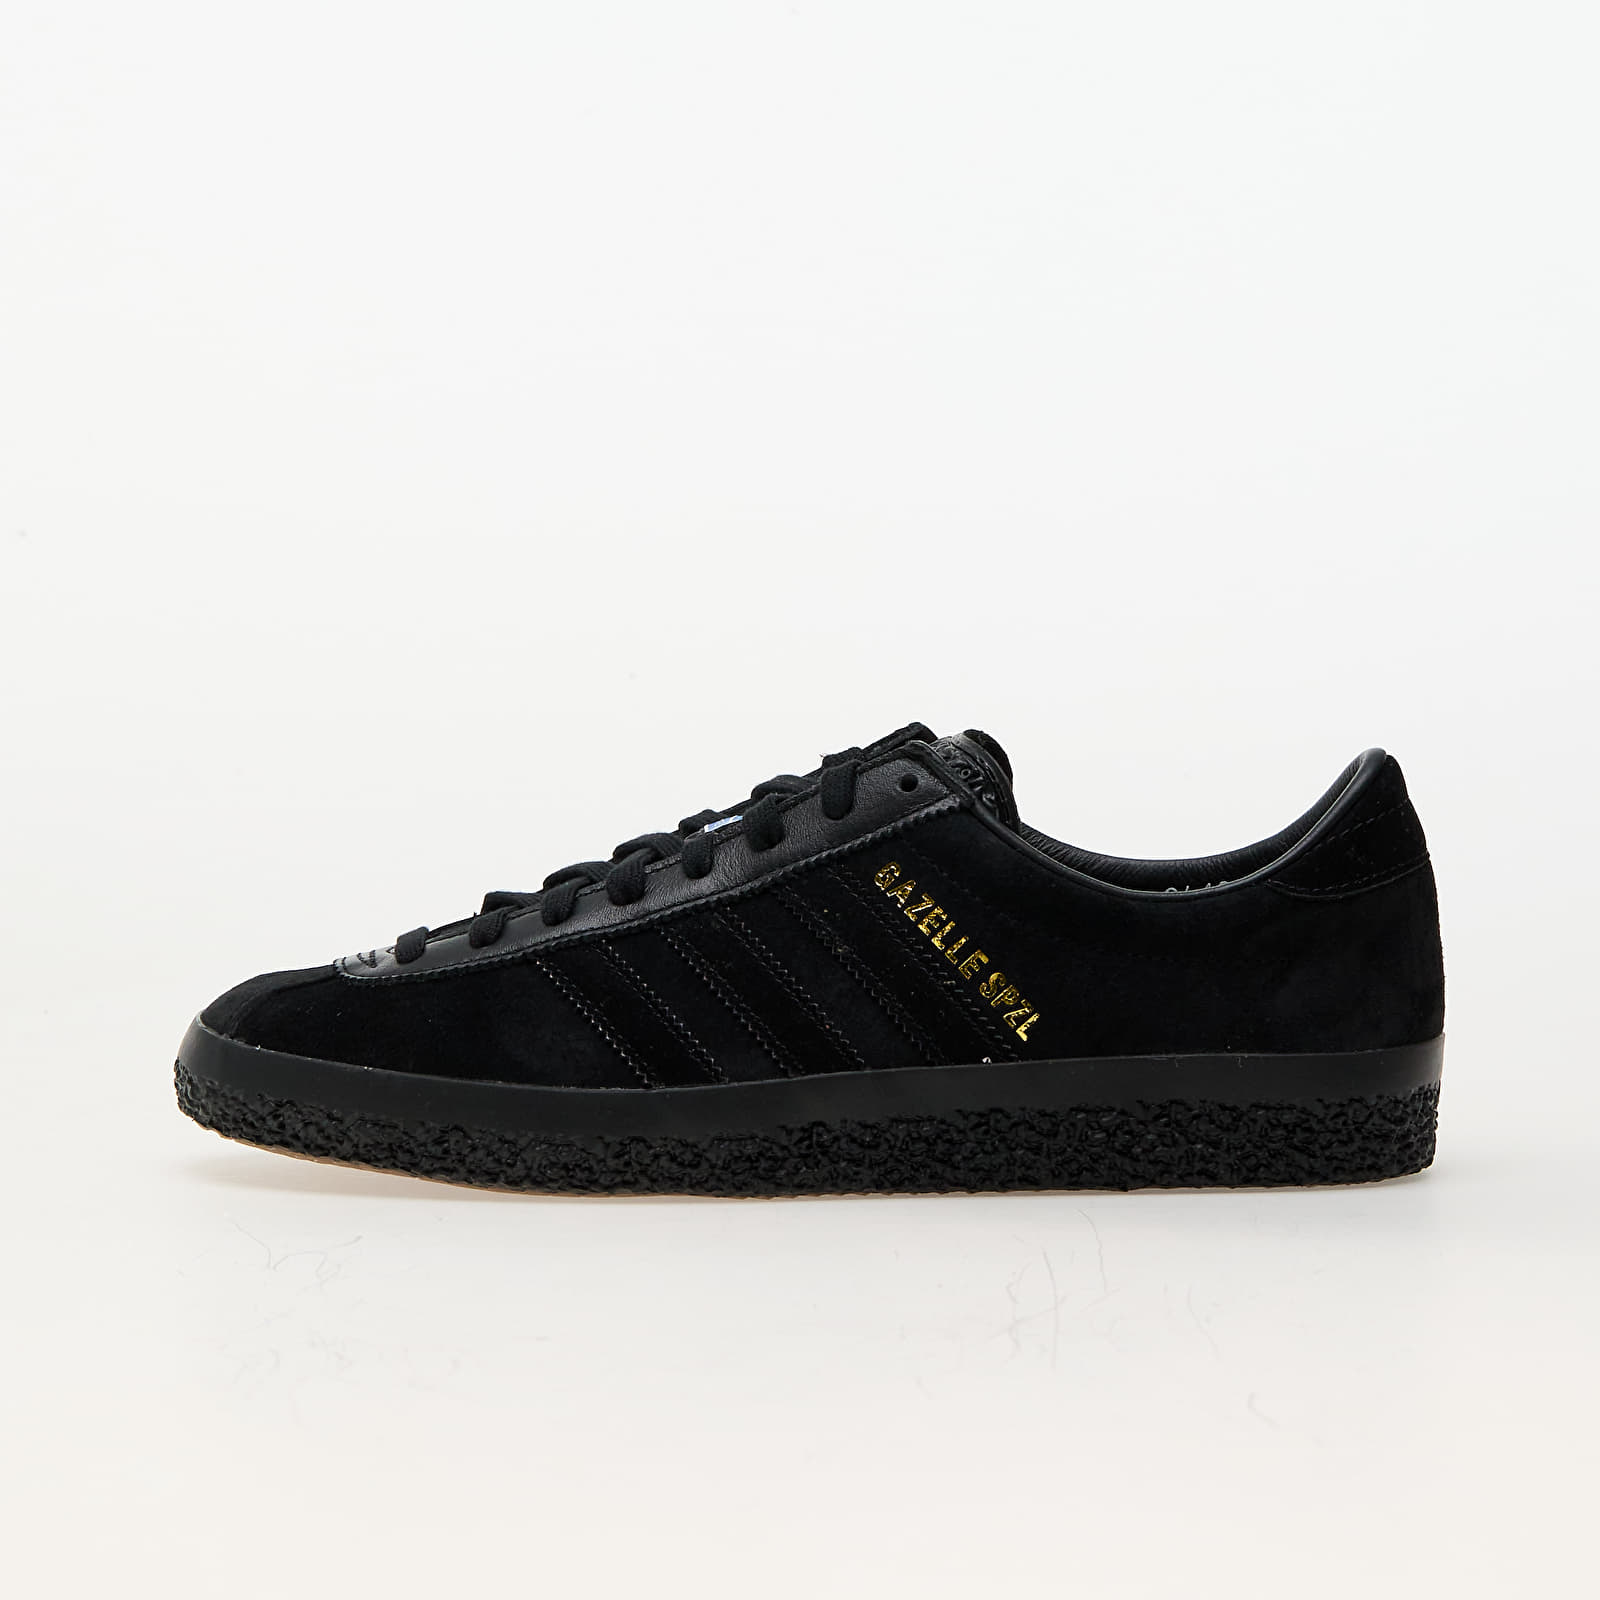 Herren Sneaker und Schuhe adidas Gazelle Spezial Core Black/ Core Black/ Core Black